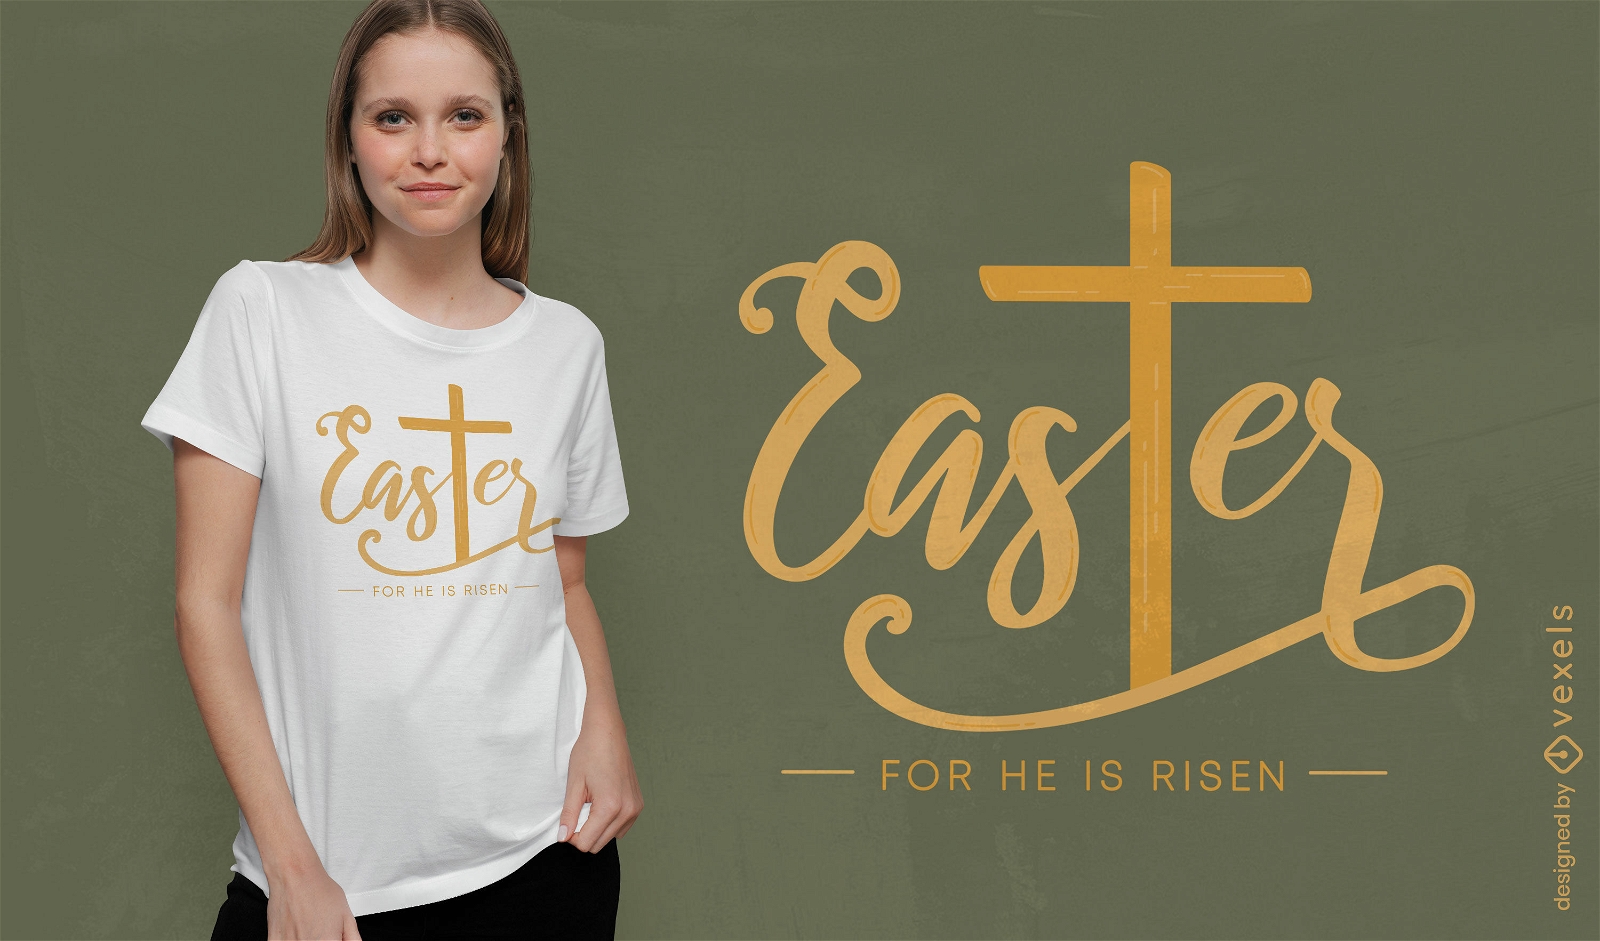 Ostern ist für ihn ein auferstandenes T-Shirt-Design